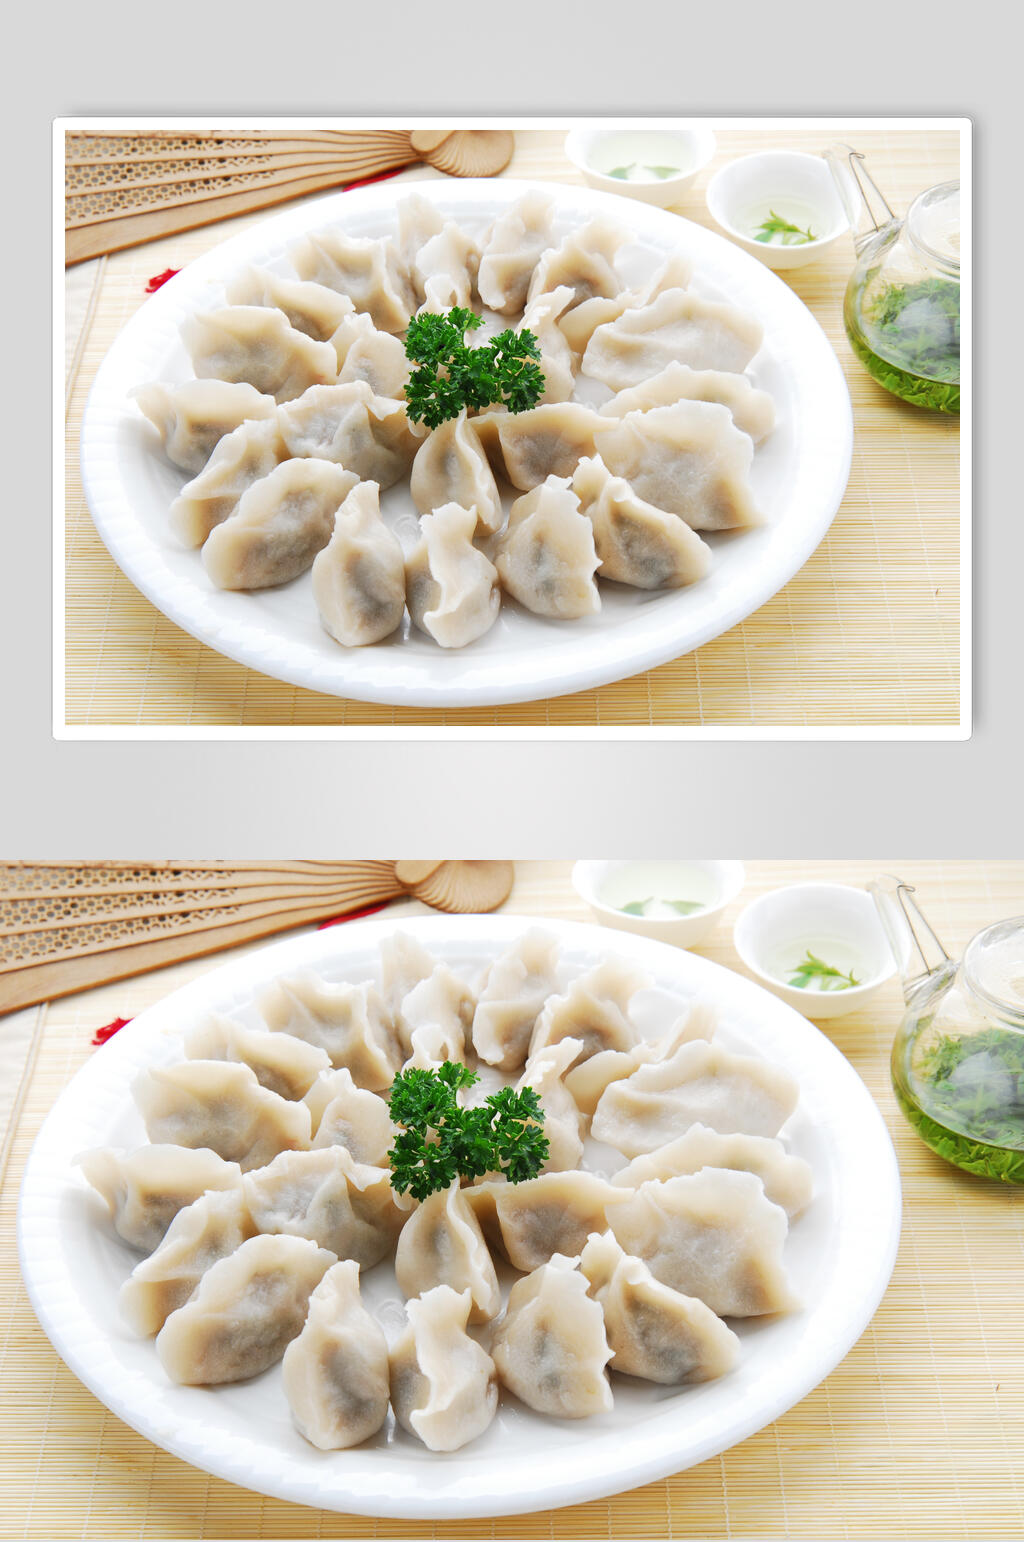 众图网独家提供新鲜美味水饺图片素材免费下载,本作品是由小红1210